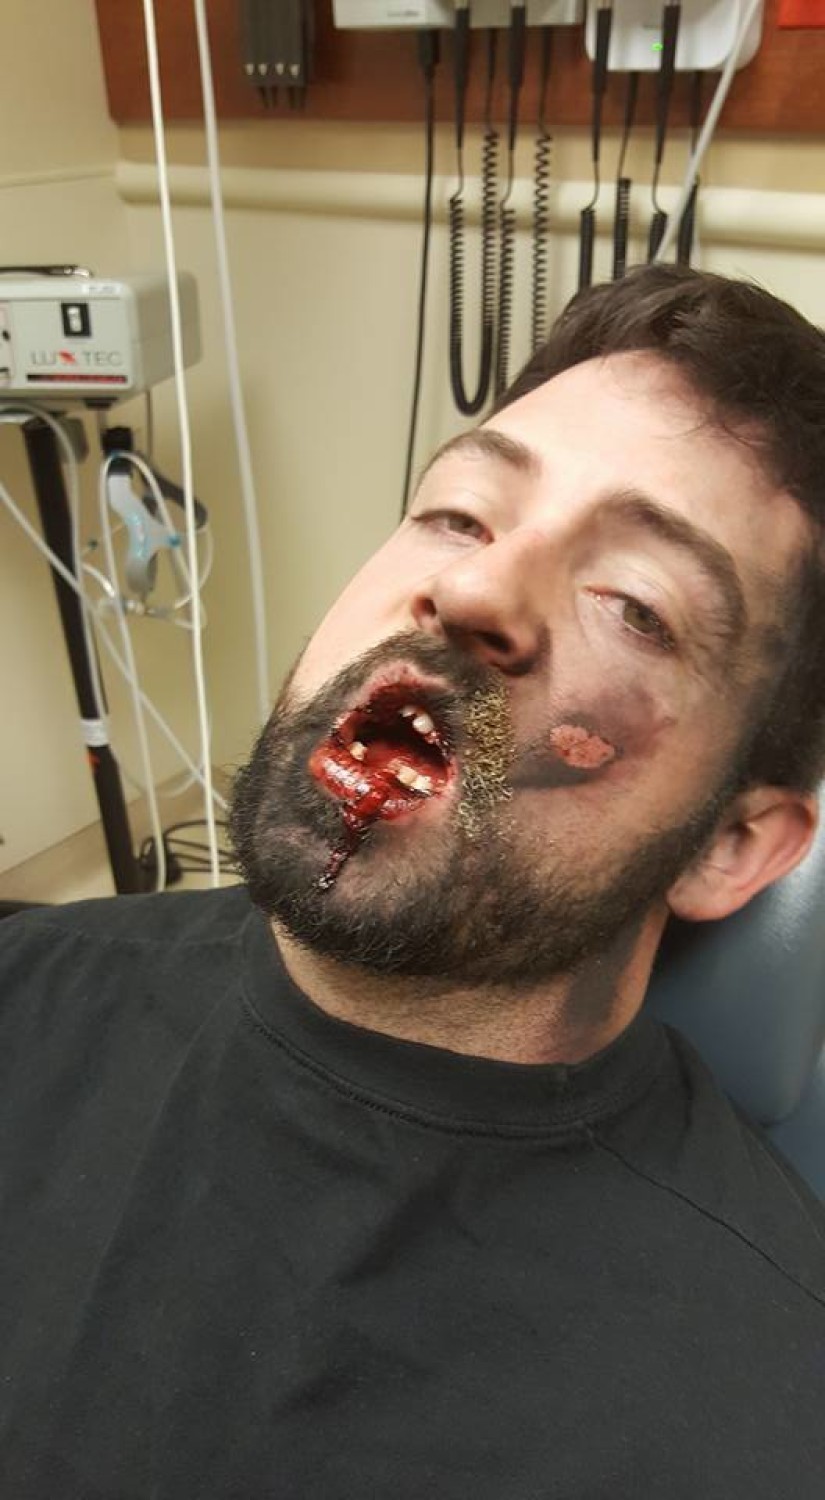 E-papieros eksplodował mu w ustach? Stracił kilka zębów i doznał licznych obrażeń. Zobacz zdjęcia.